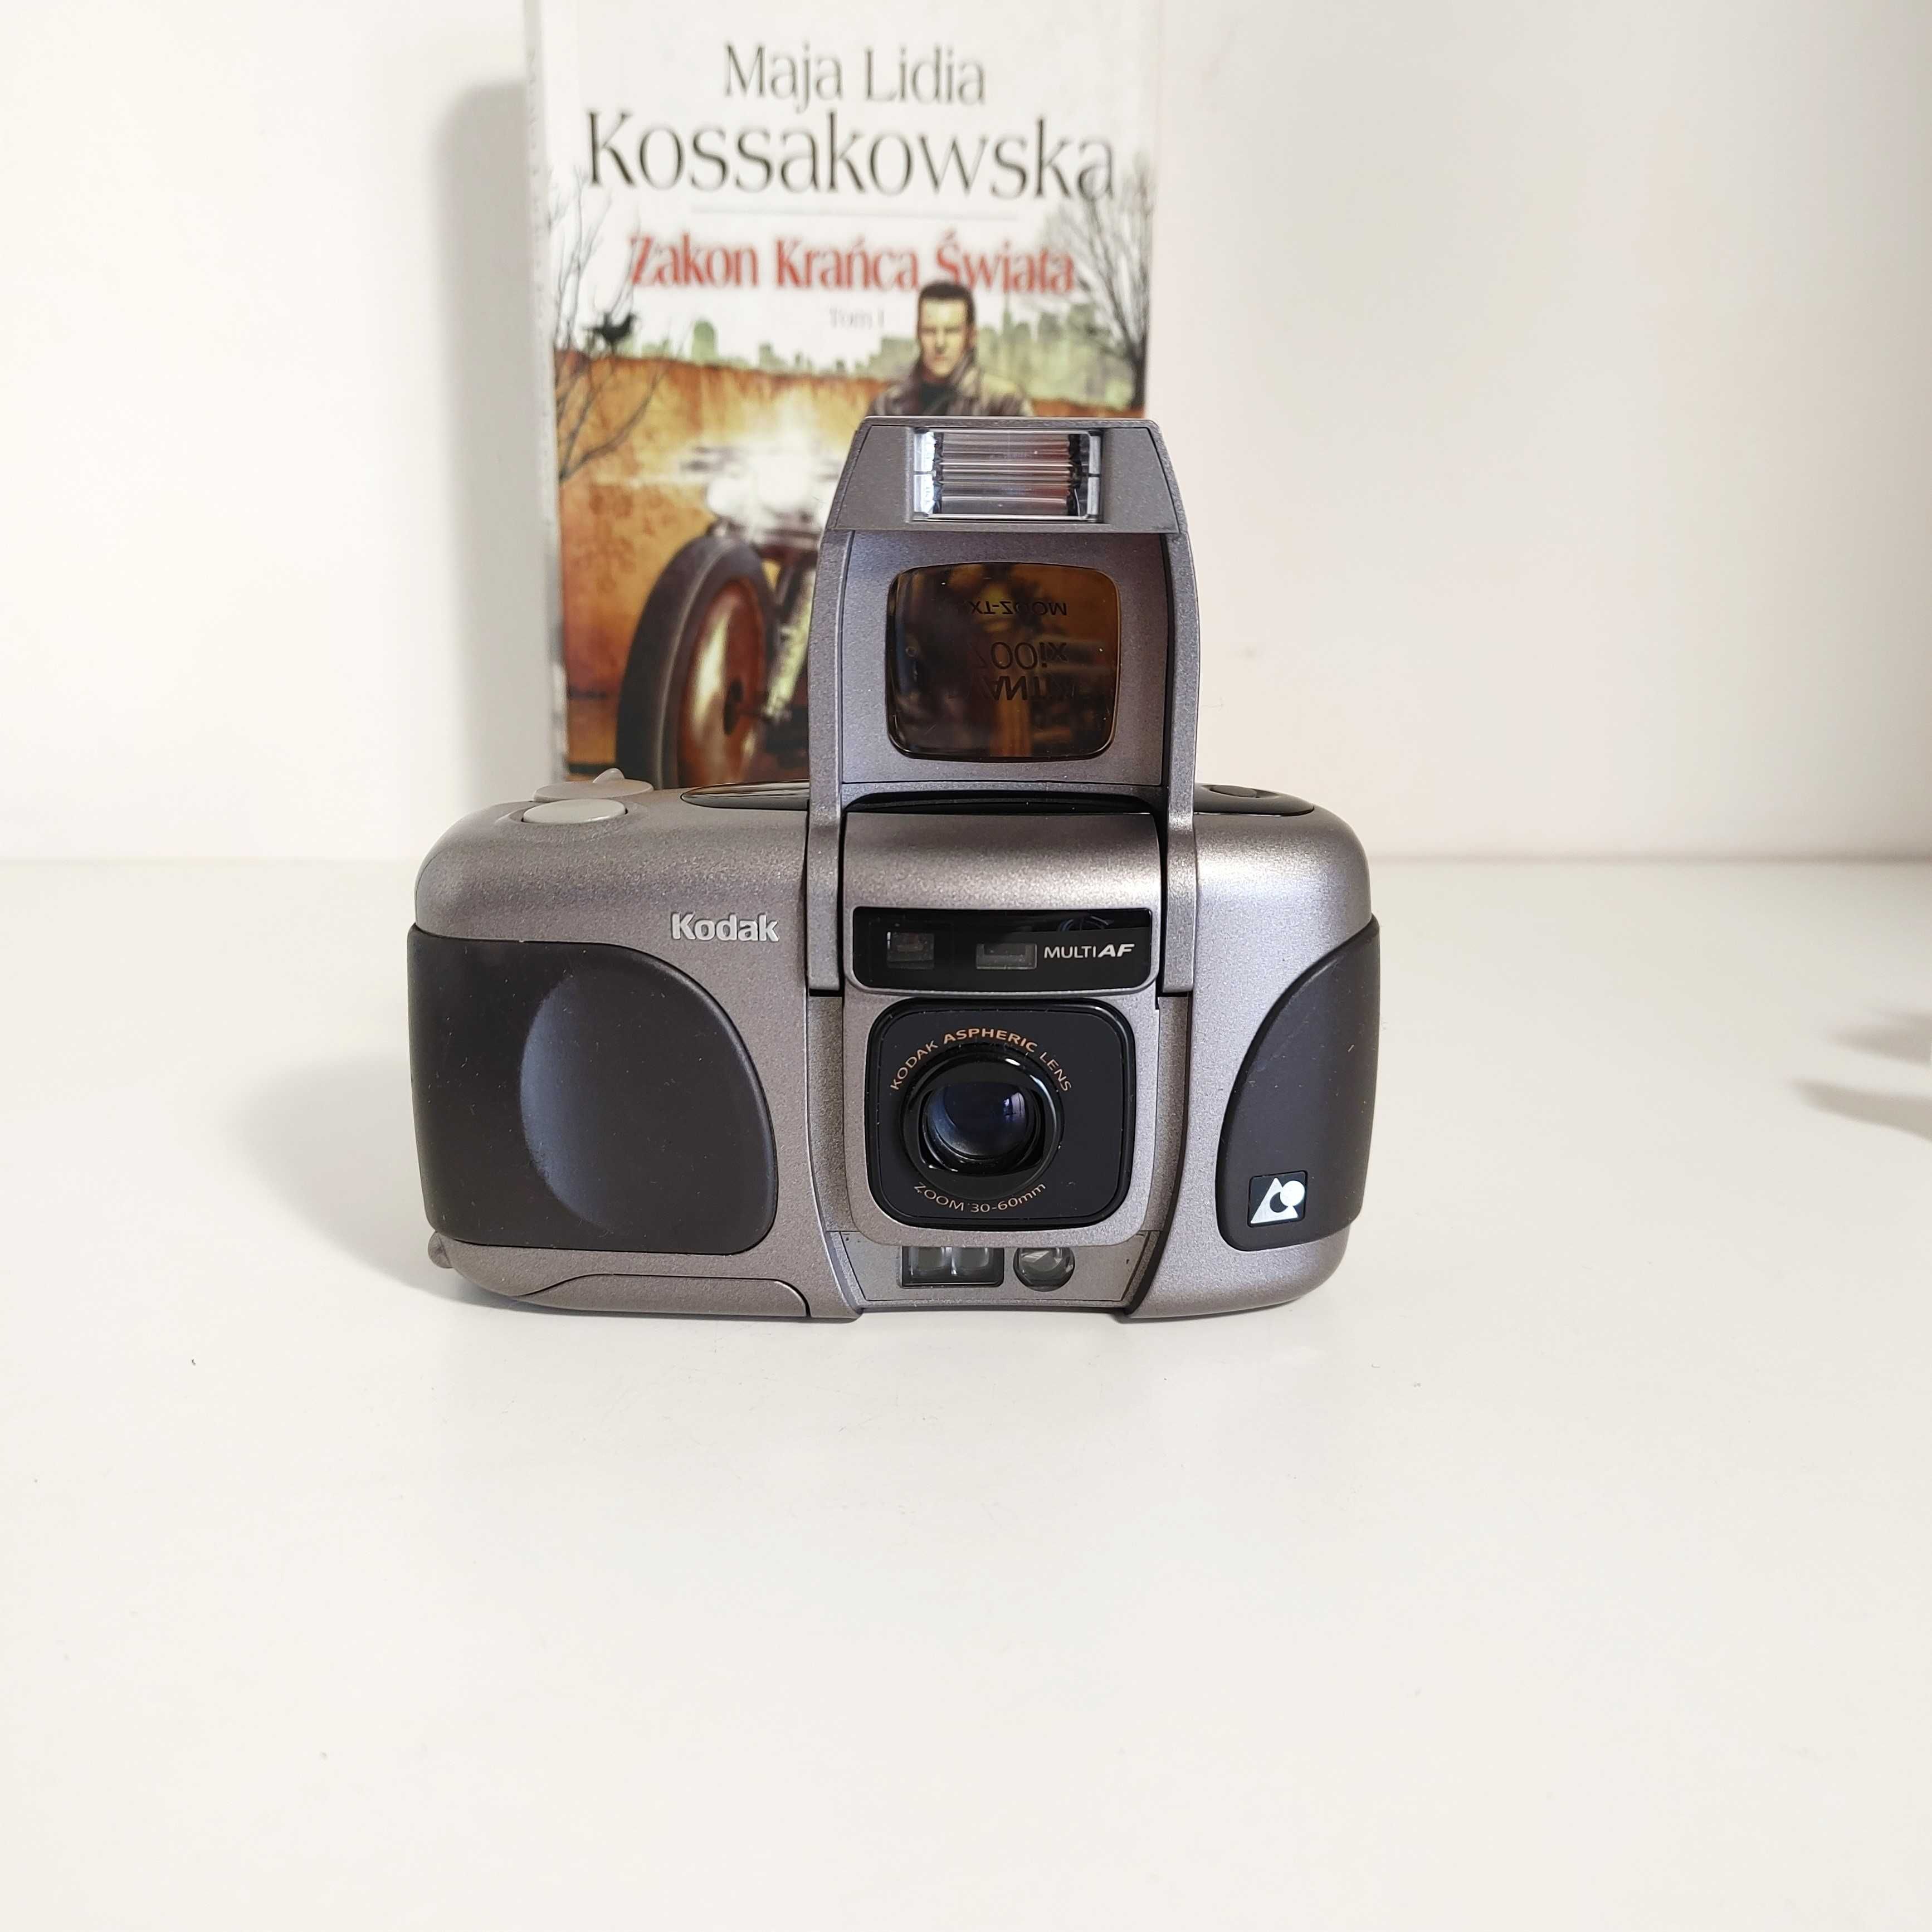 Kompaktowy aparat anakogowy KODAK Advantix 4700ix  APS - wyjątkowy